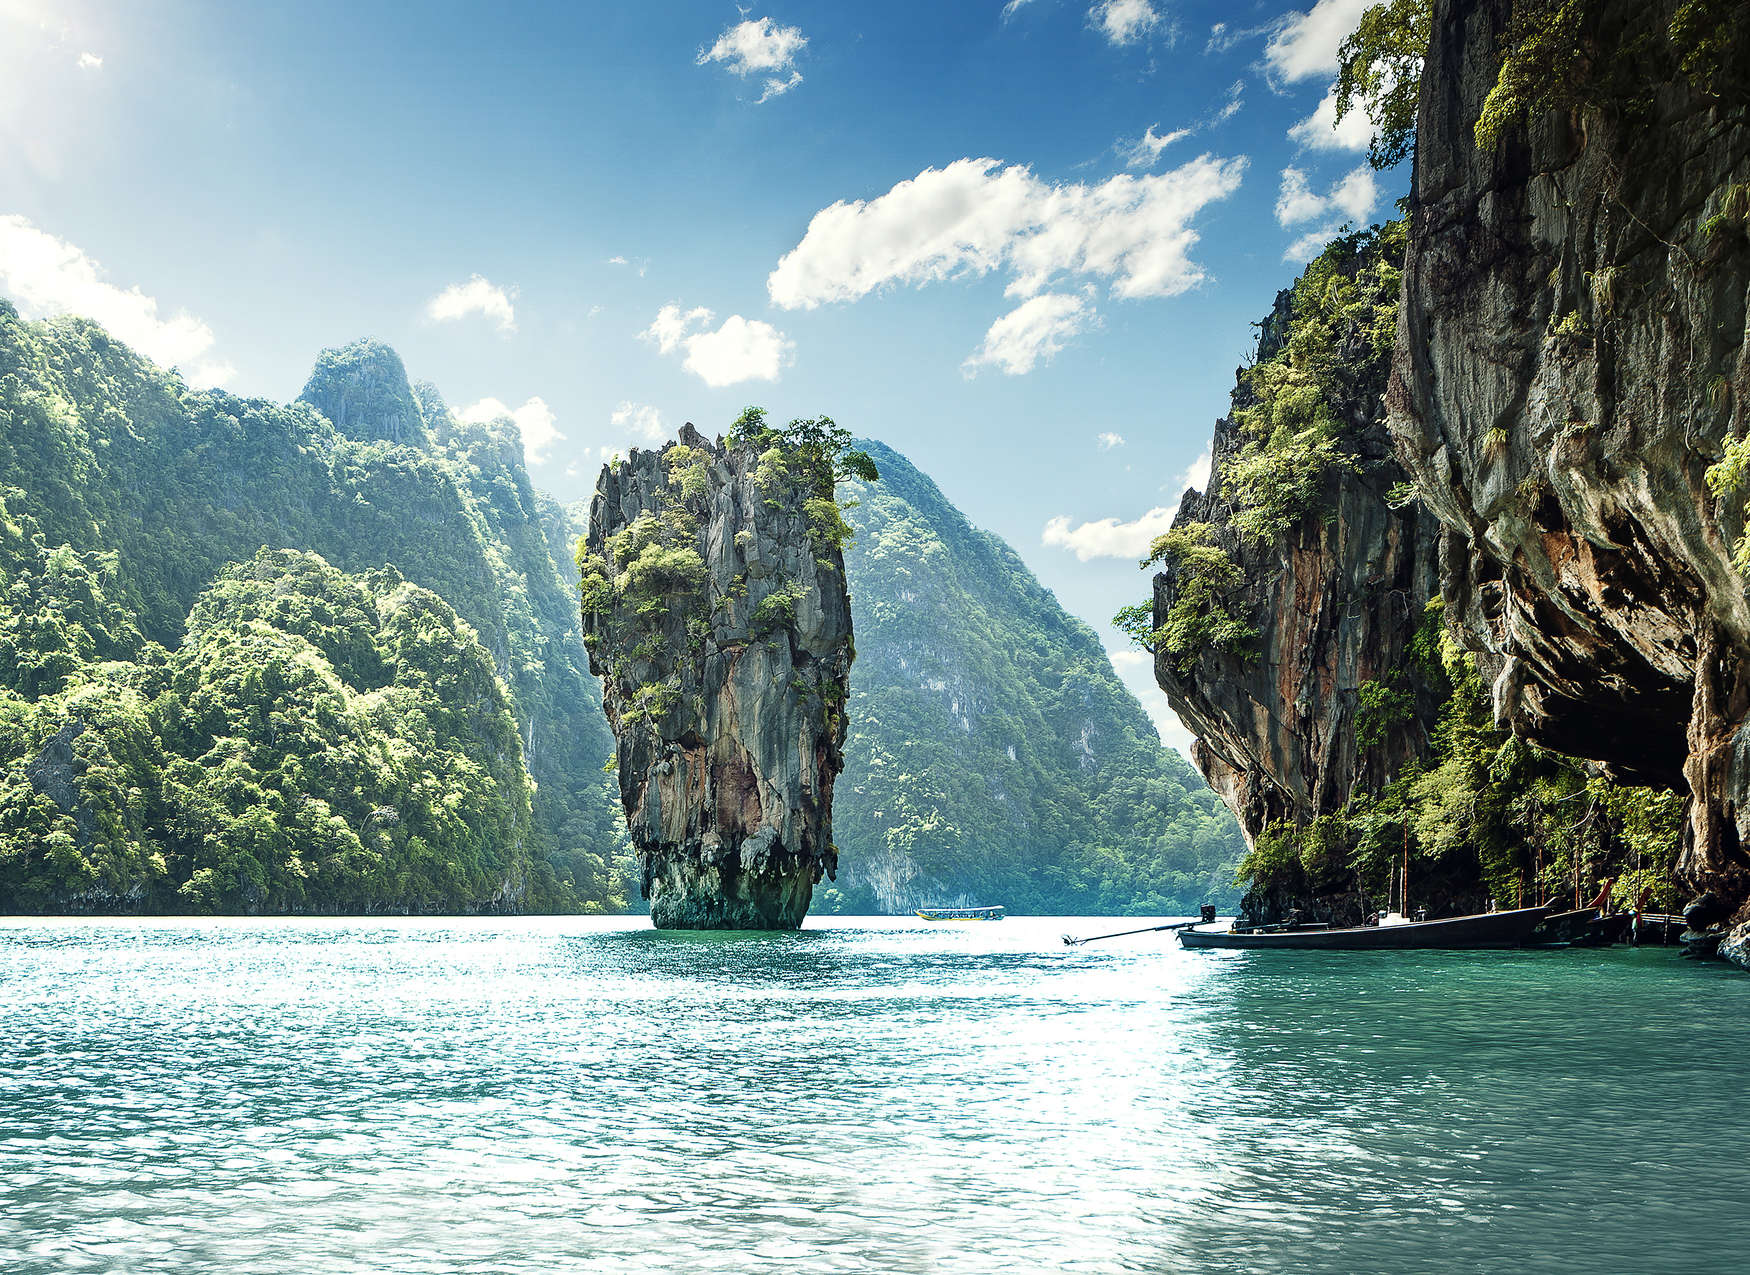             Papier peint panoramique avec vue paradisiaque sur un paysage de montagne en Thaïlande - bleu, vert, blanc
        